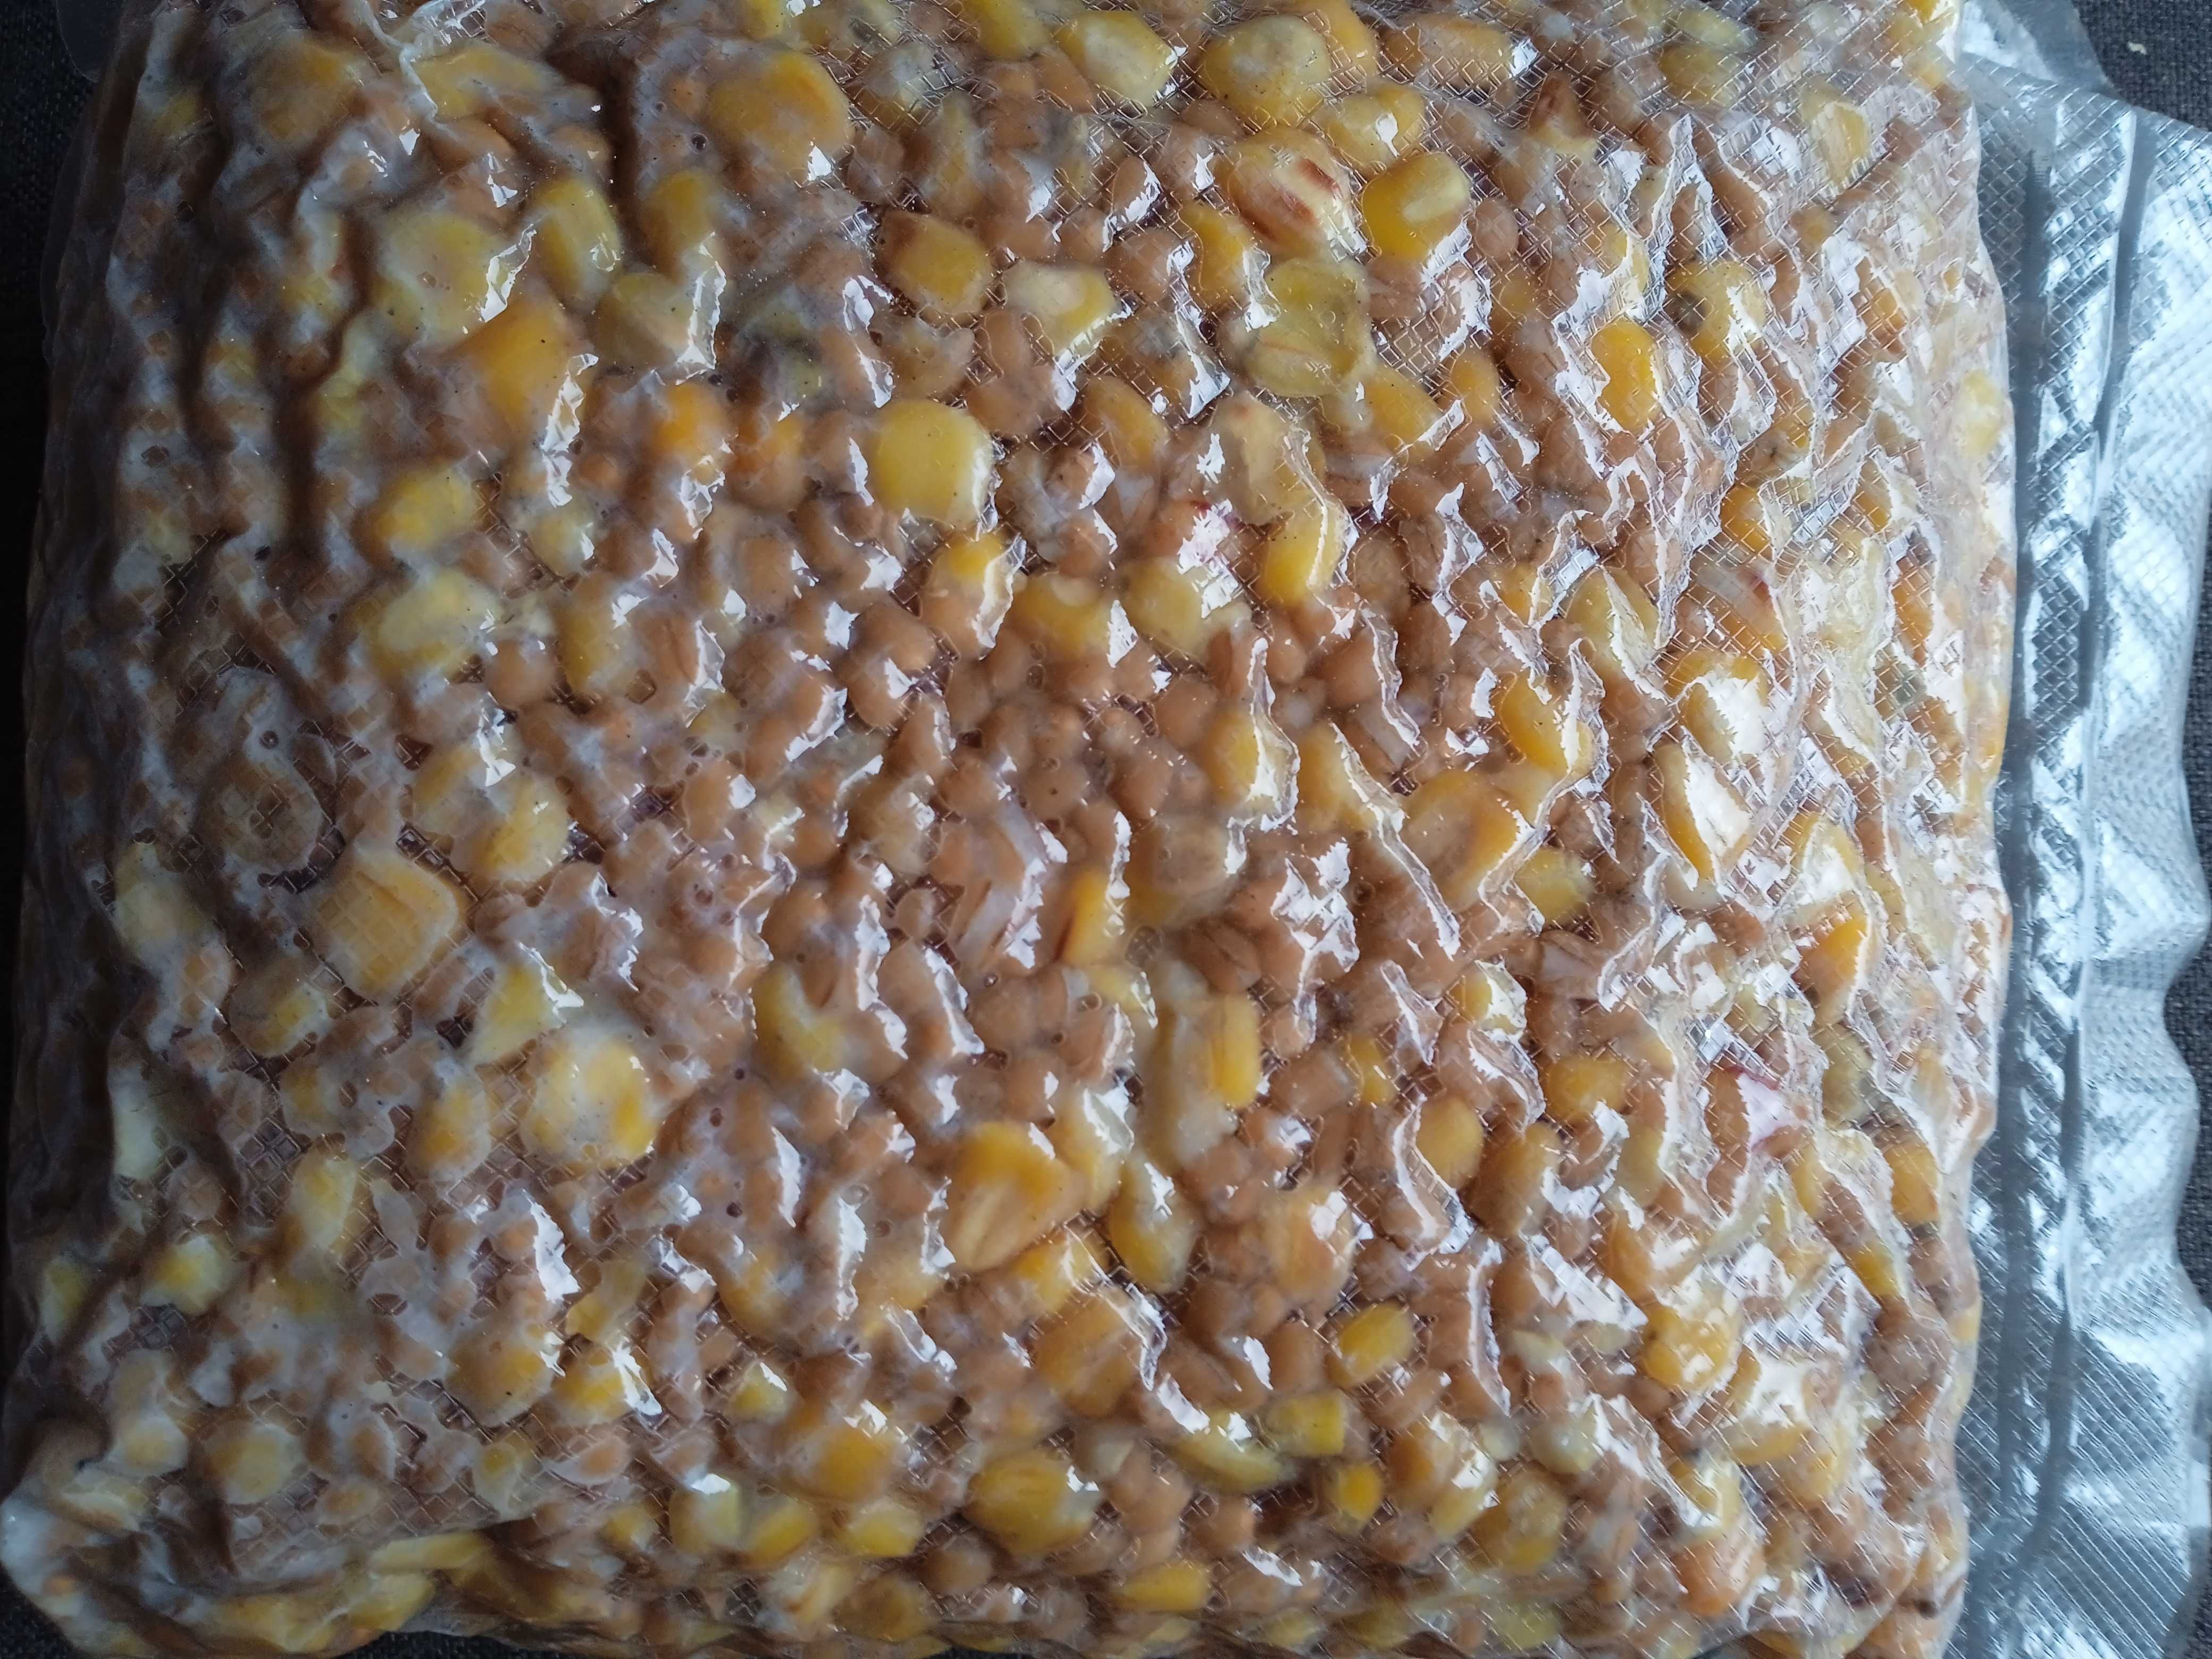 Kukurydza,pszenica gotowana 5zł .